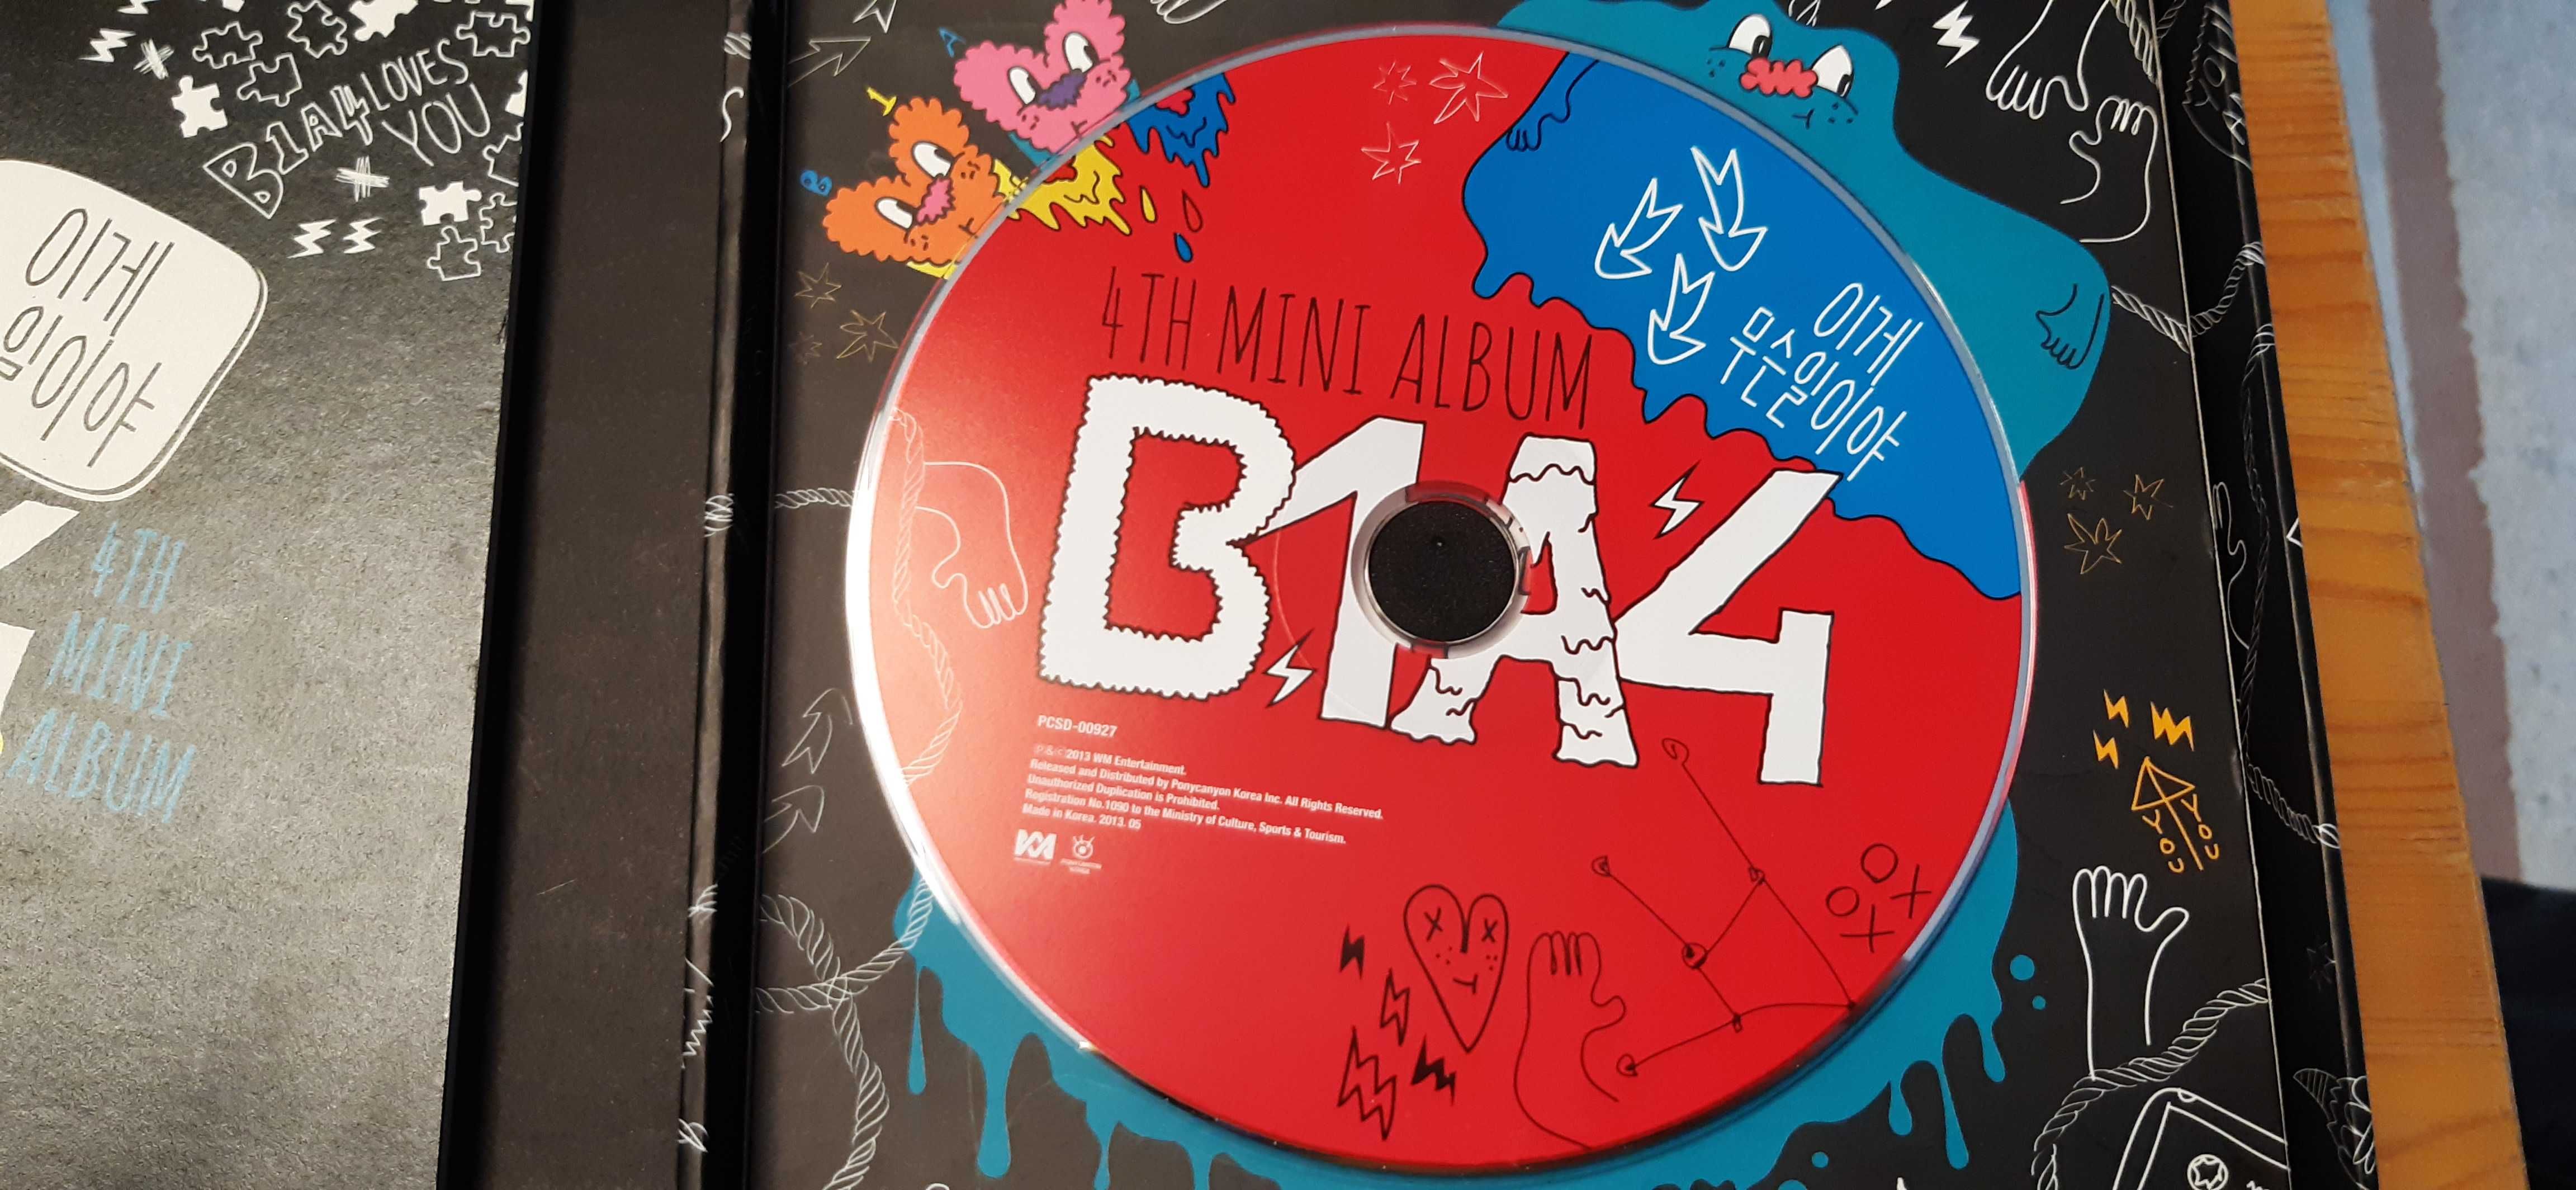 mini album i artbook zespołu kpop koreański zespół B1A4 zestaw